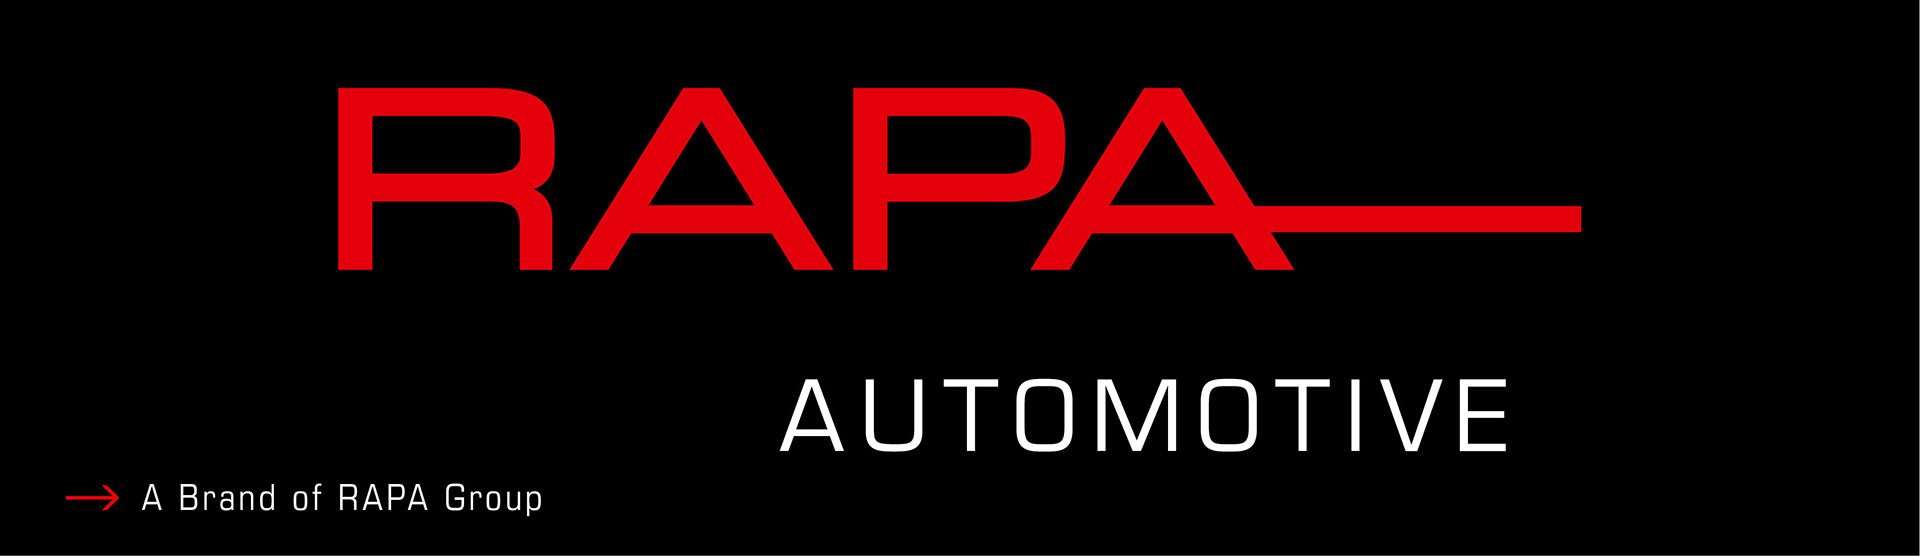 RAPA Automotive GmbH & Co. KG